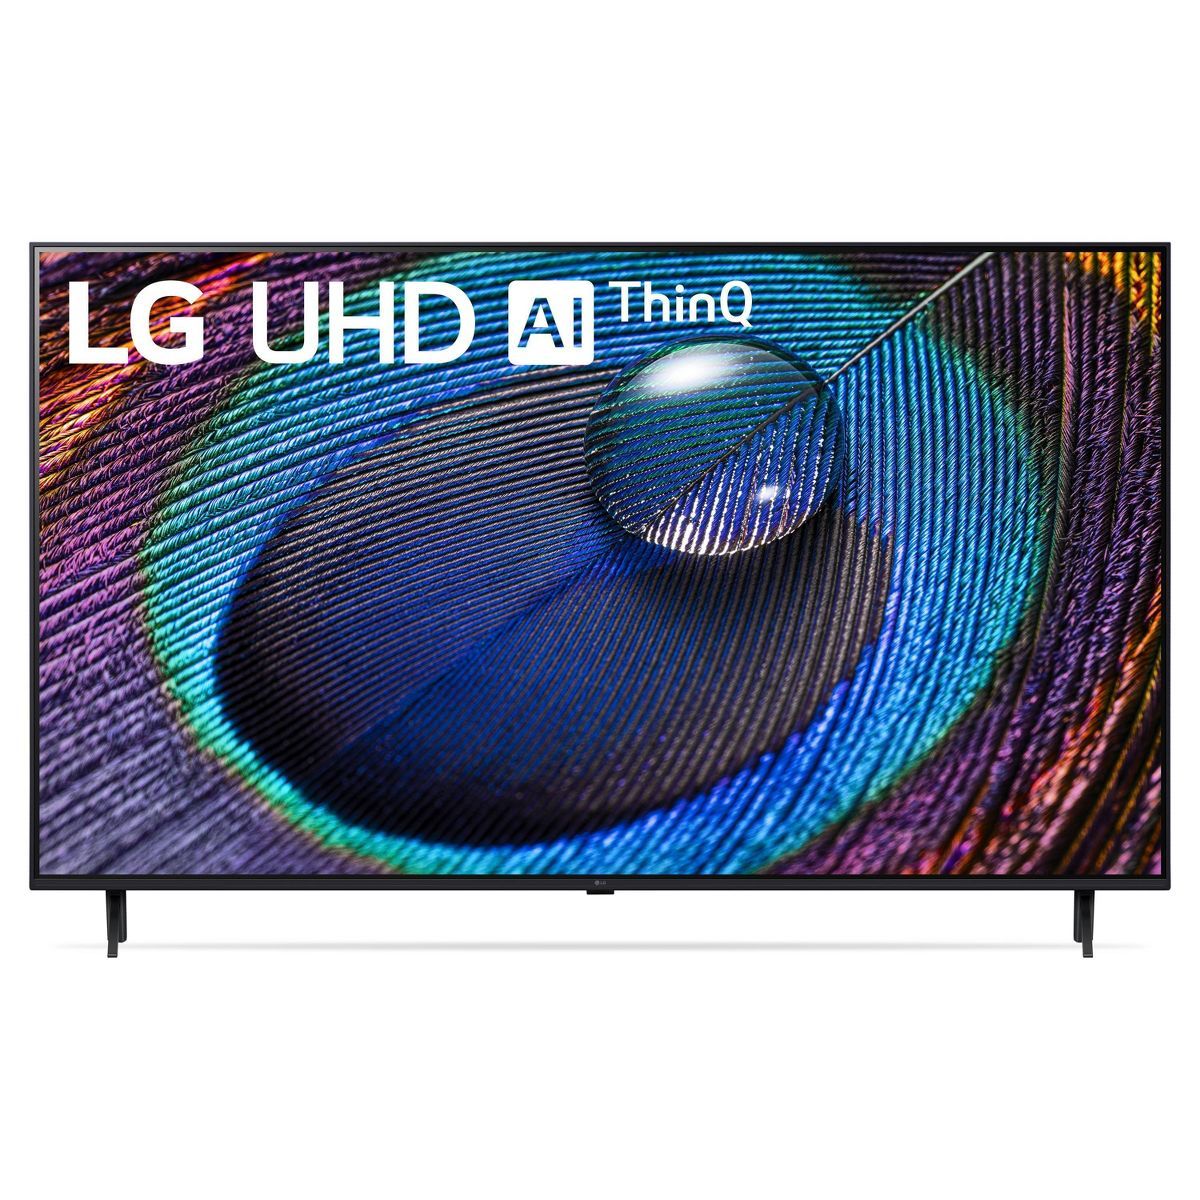 LG 55" Class 4K UHD 2160p LED Smart TV - 55UR9000 | Target